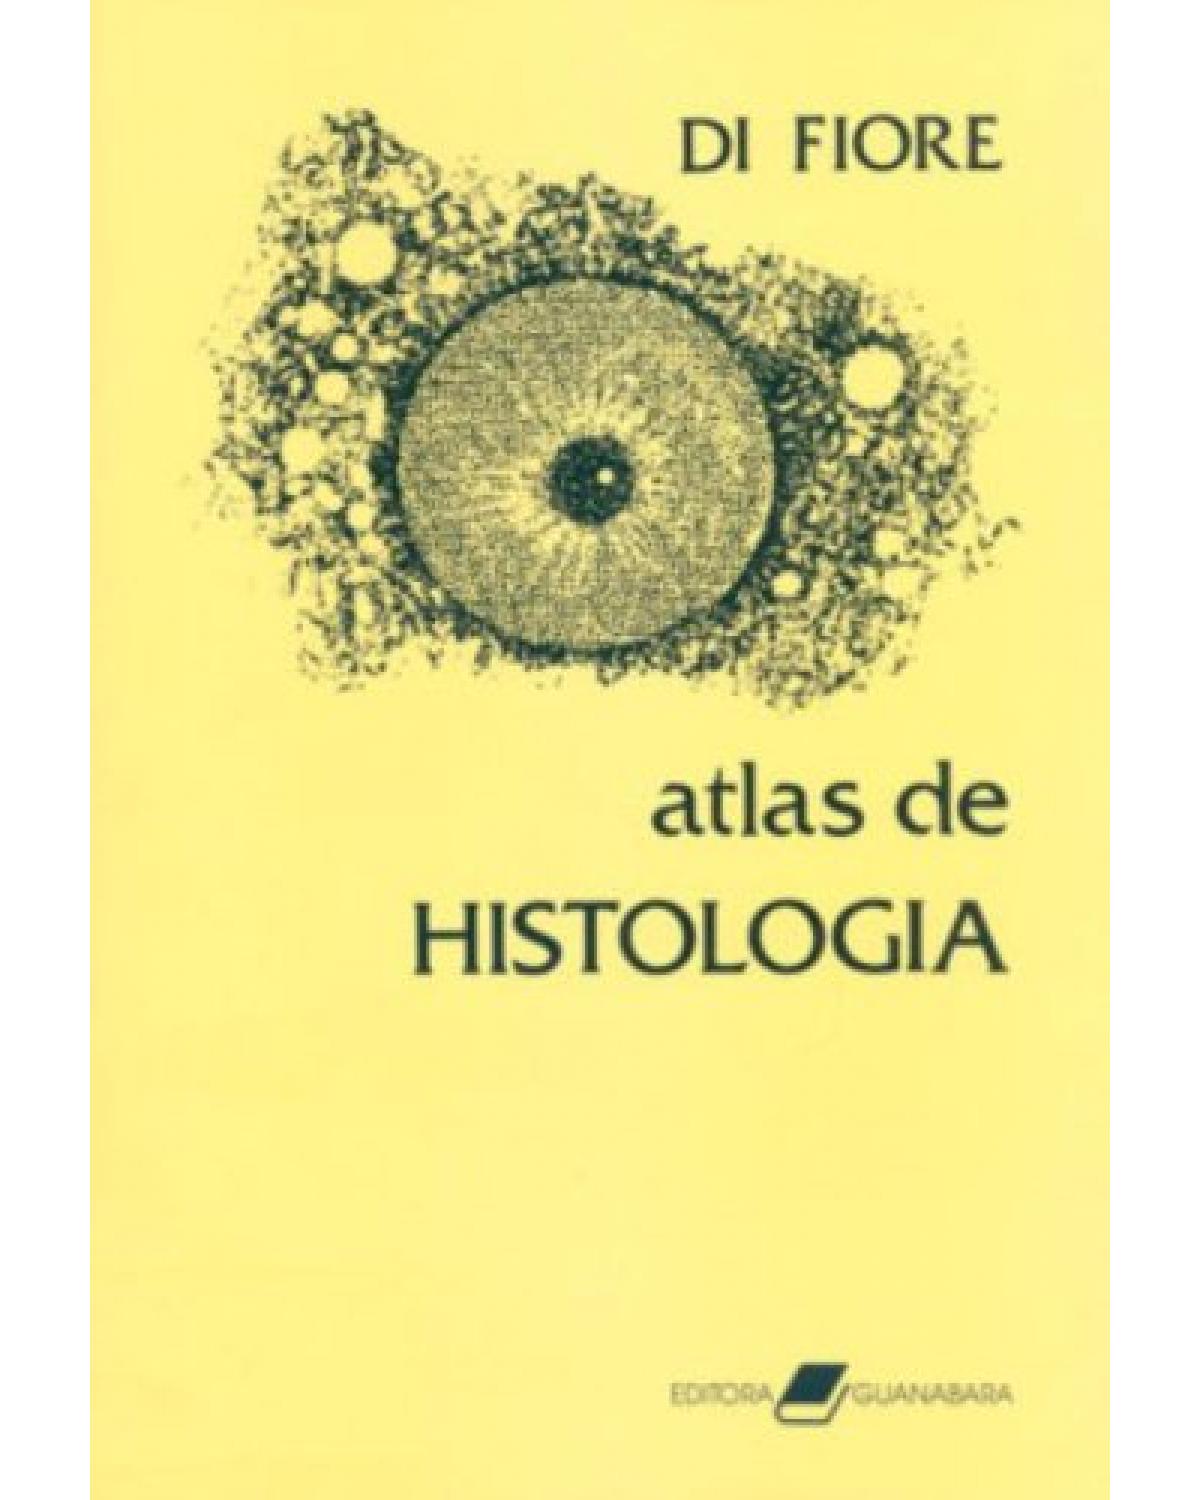 Atlas de histologia - 7ª Edição | 1984